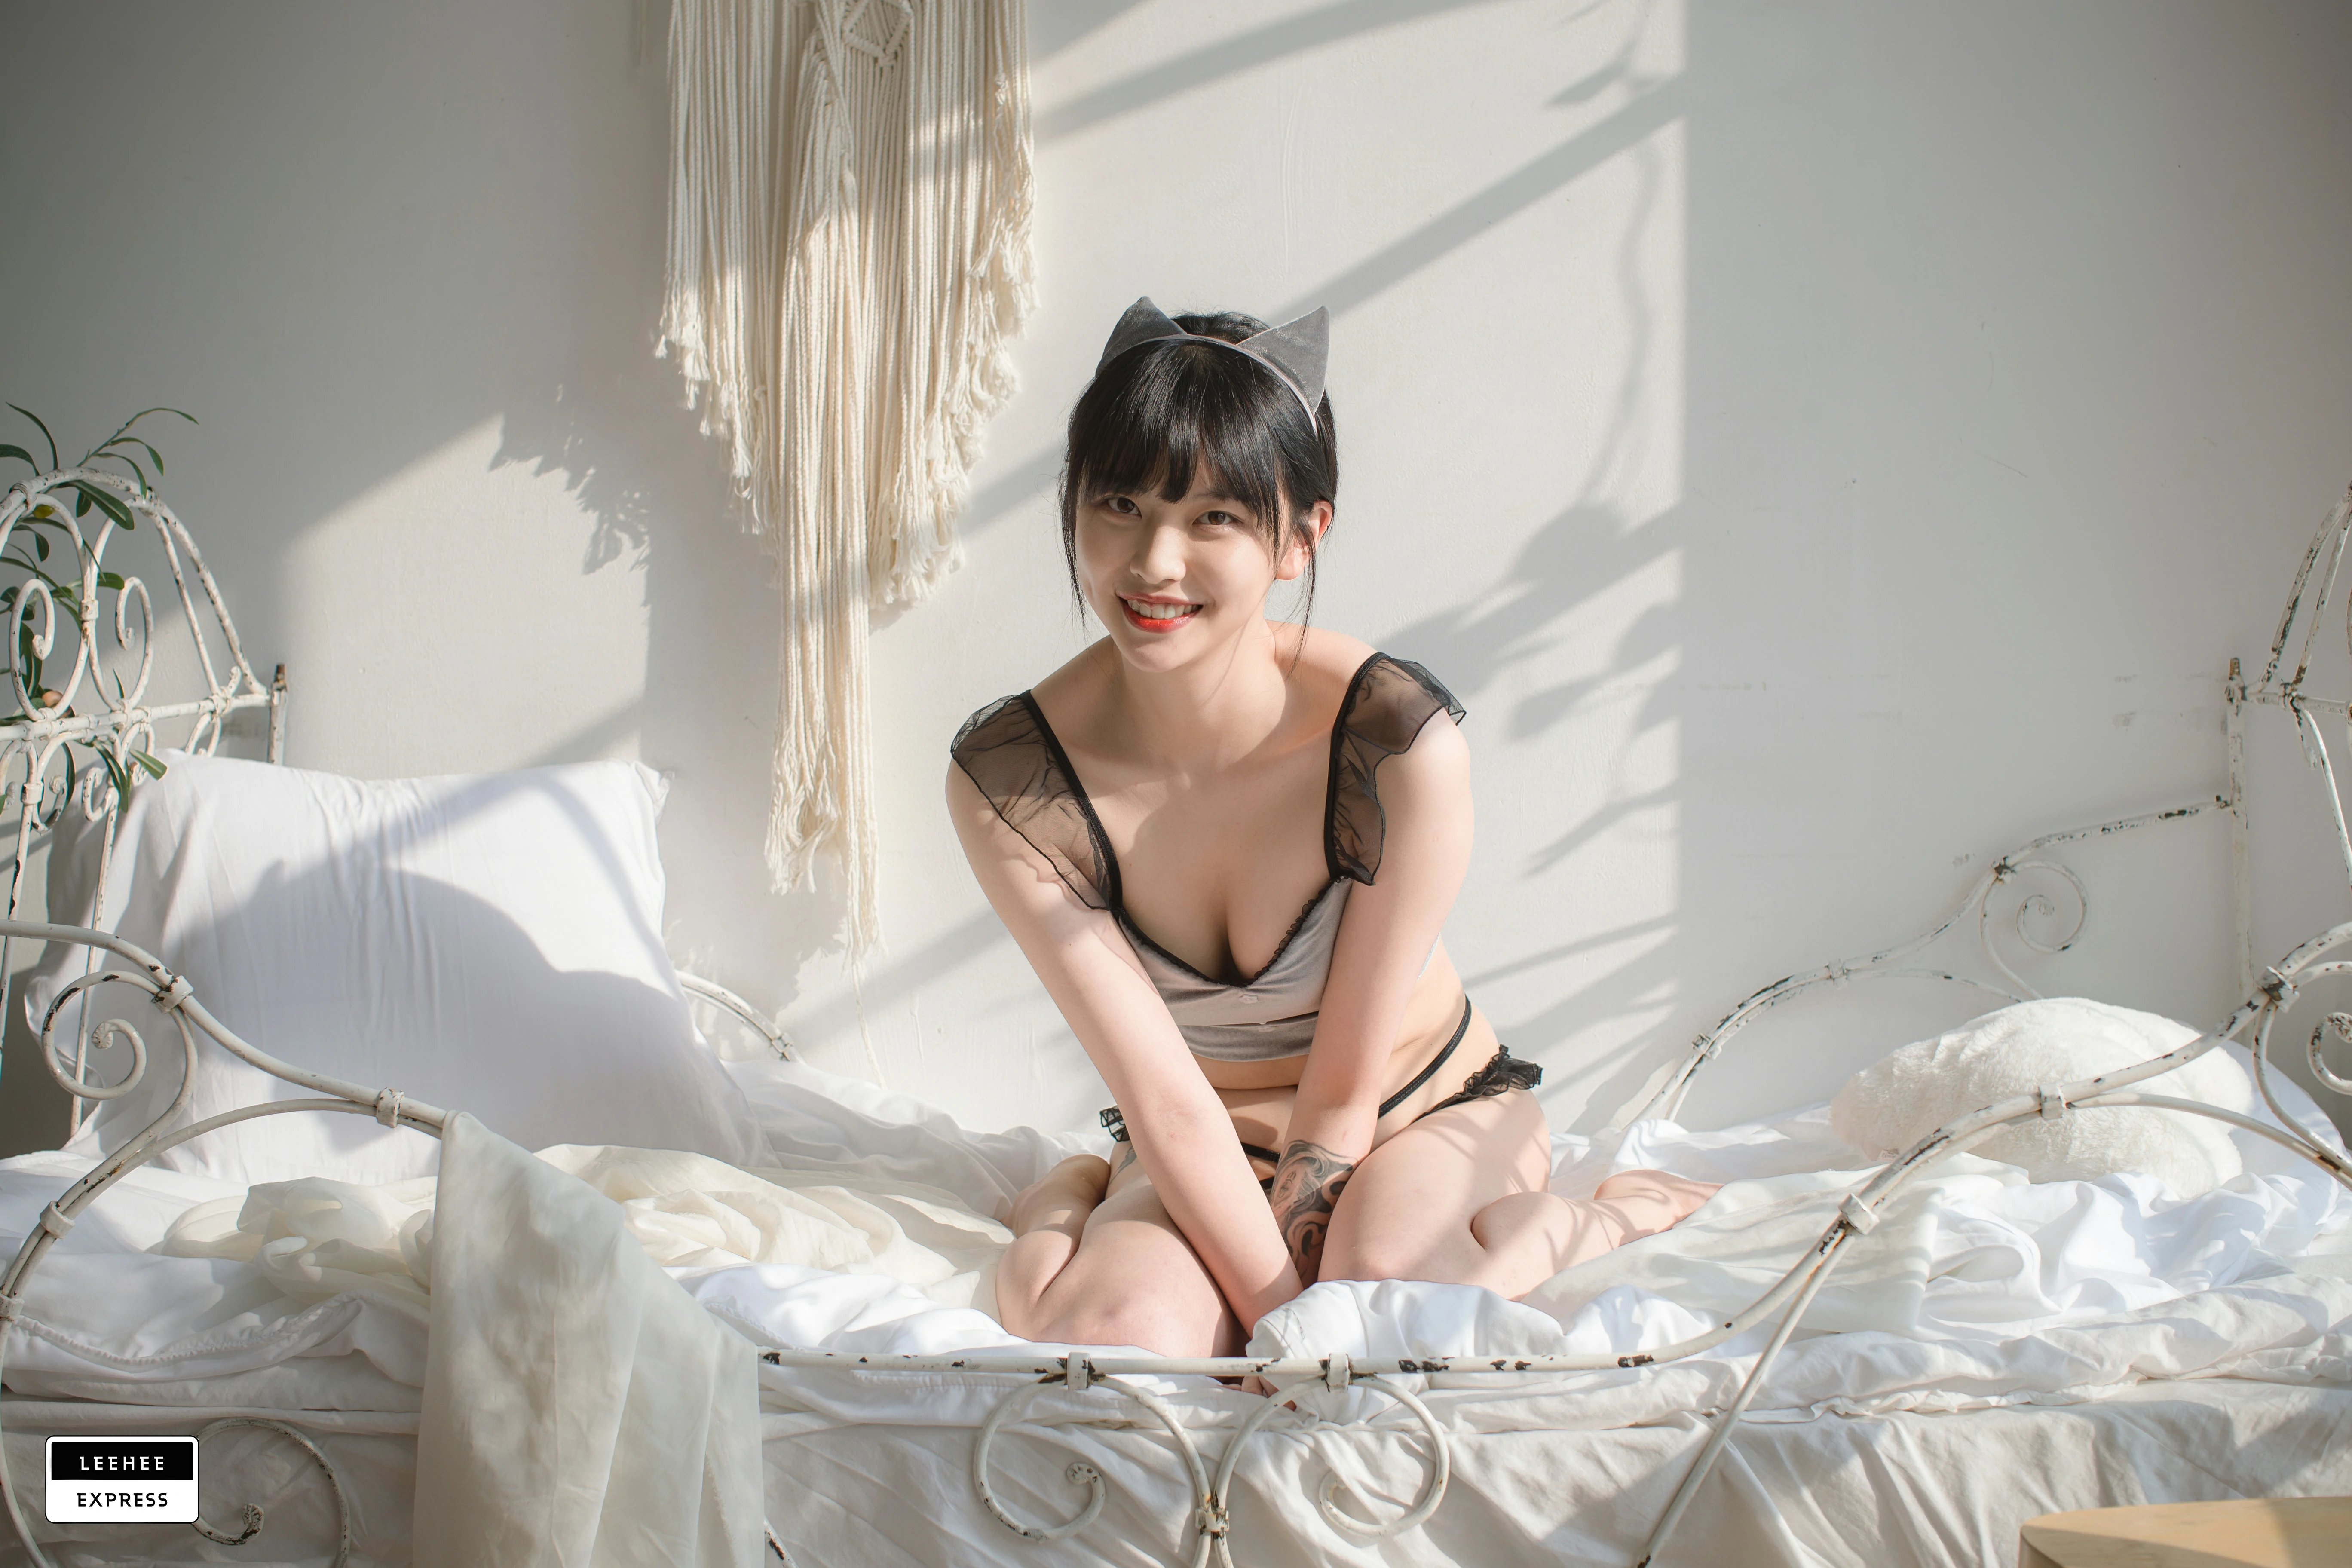 [Leehee Express]LEBE-007 GMS 韩国性感少女黑色透视上衣居家私房写真集,0014